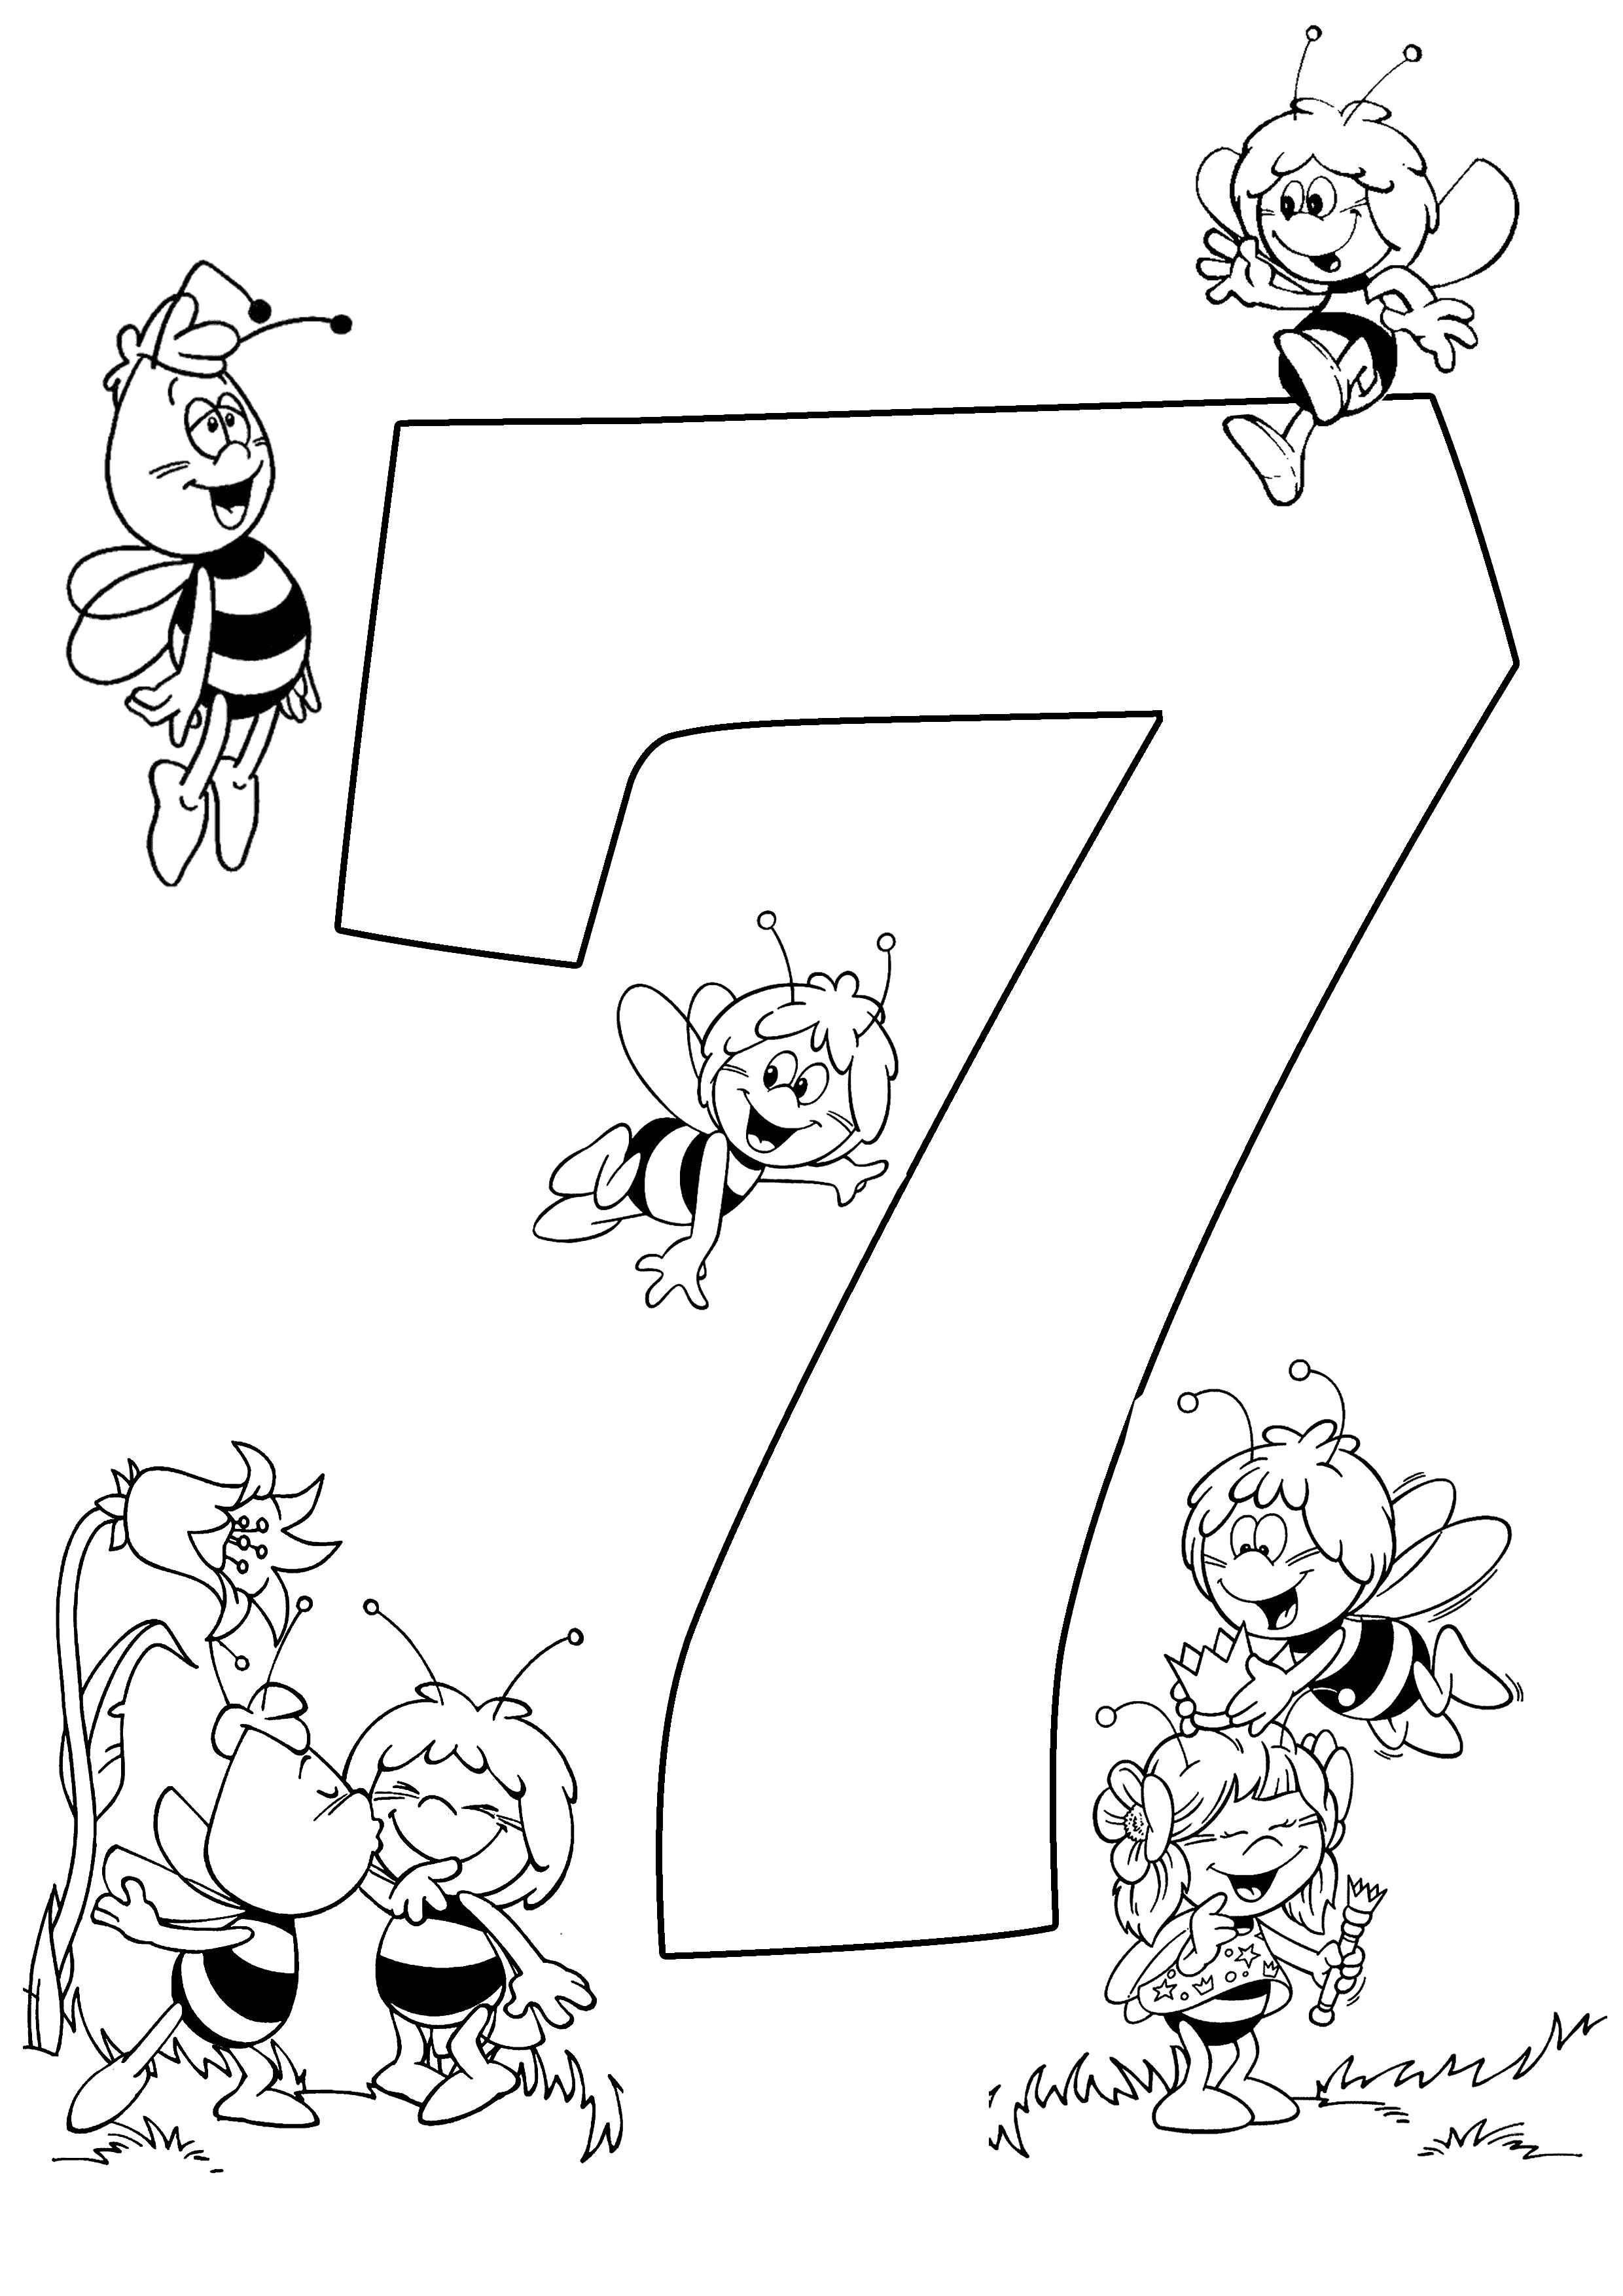 Раскраска Веселый счет семь пчелок. Скачать с цифрами.  Распечатать с цифрами